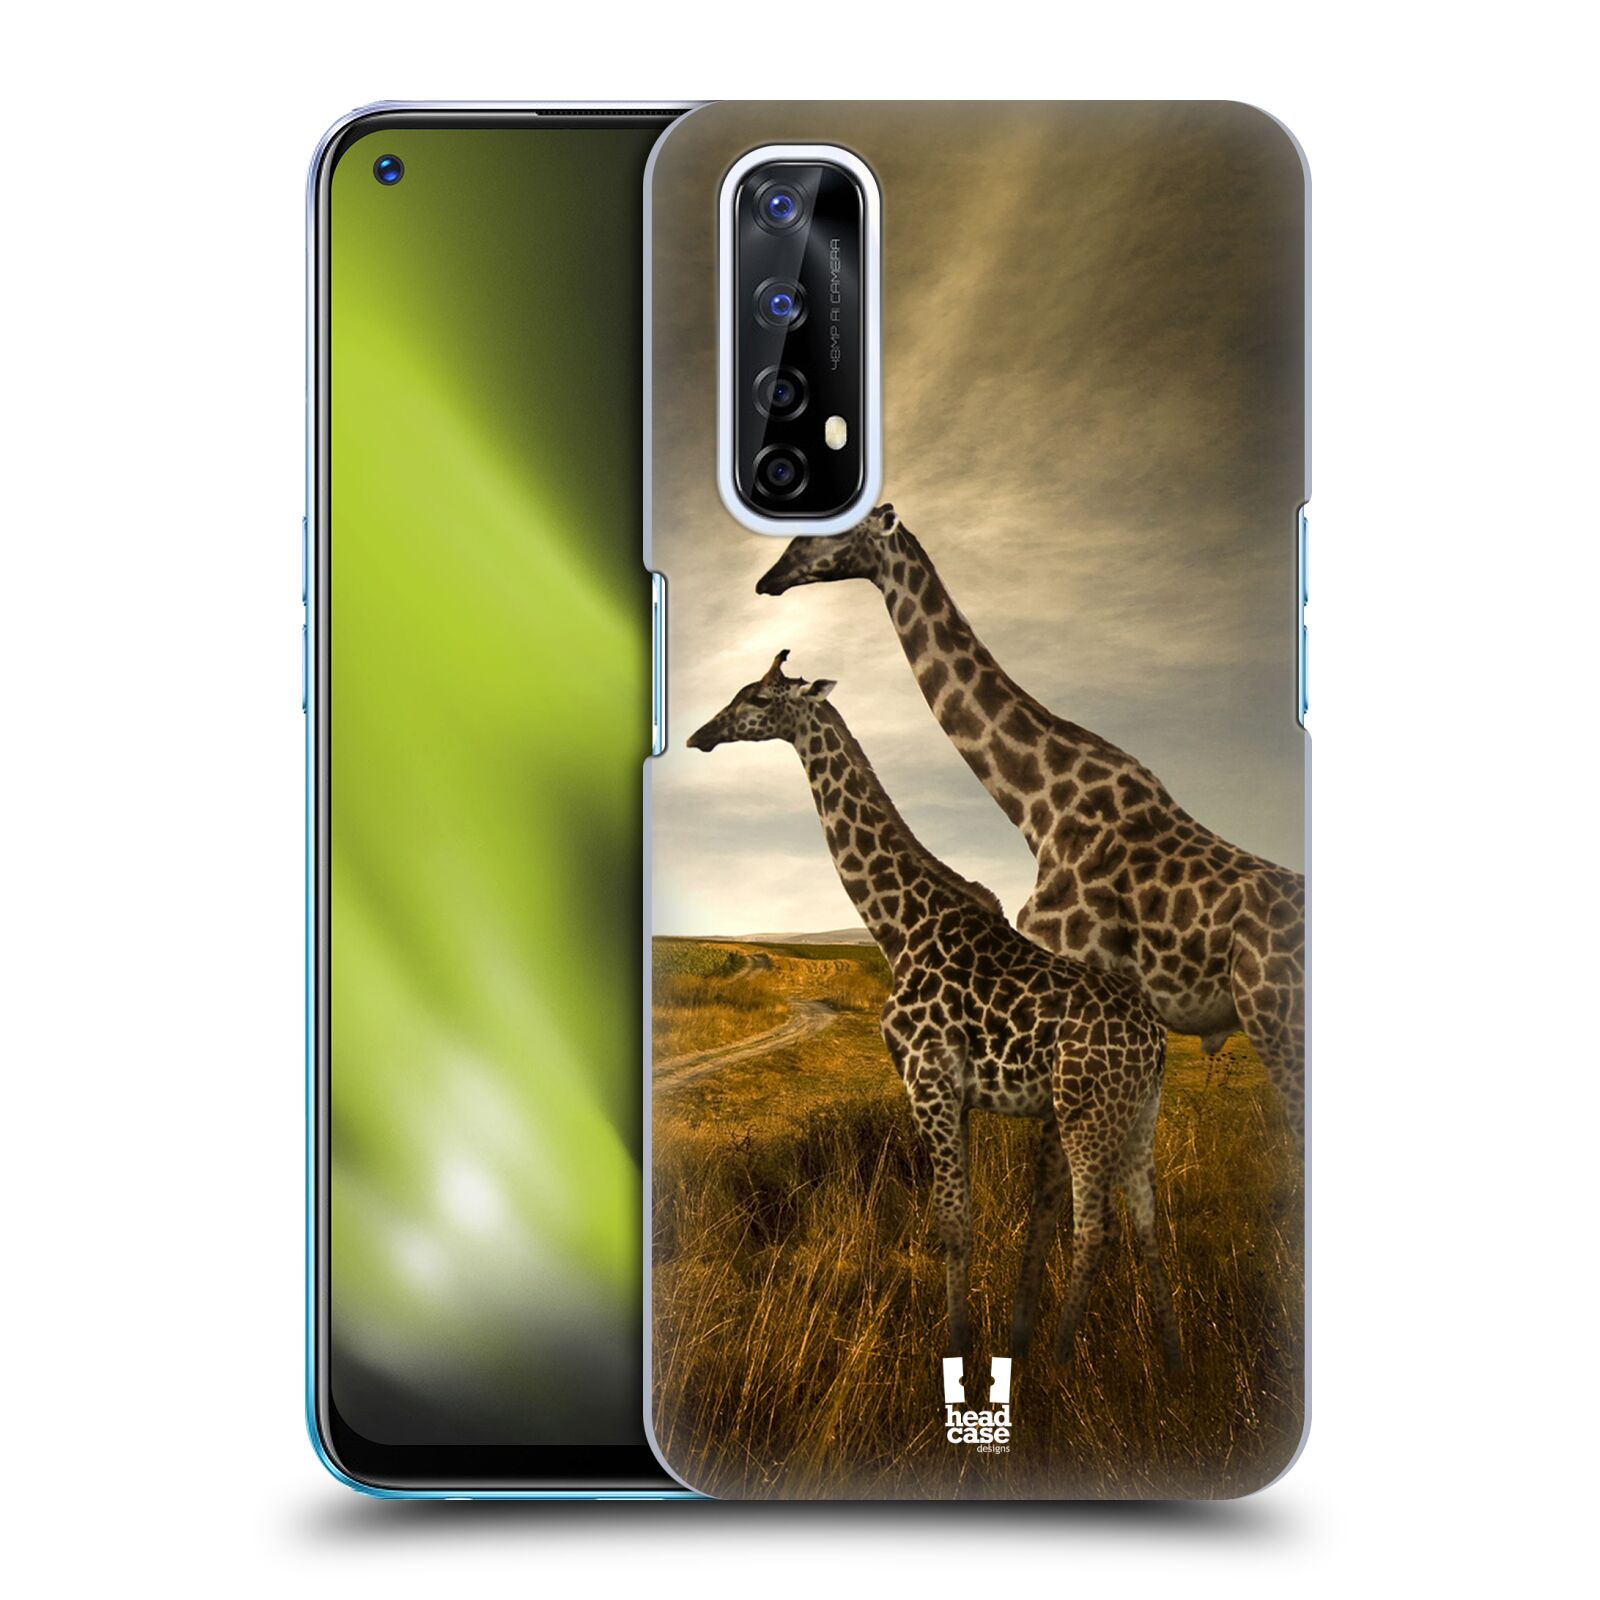 Zadní obal pro mobil Realme 7 - HEAD CASE - Svět zvířat žirafy